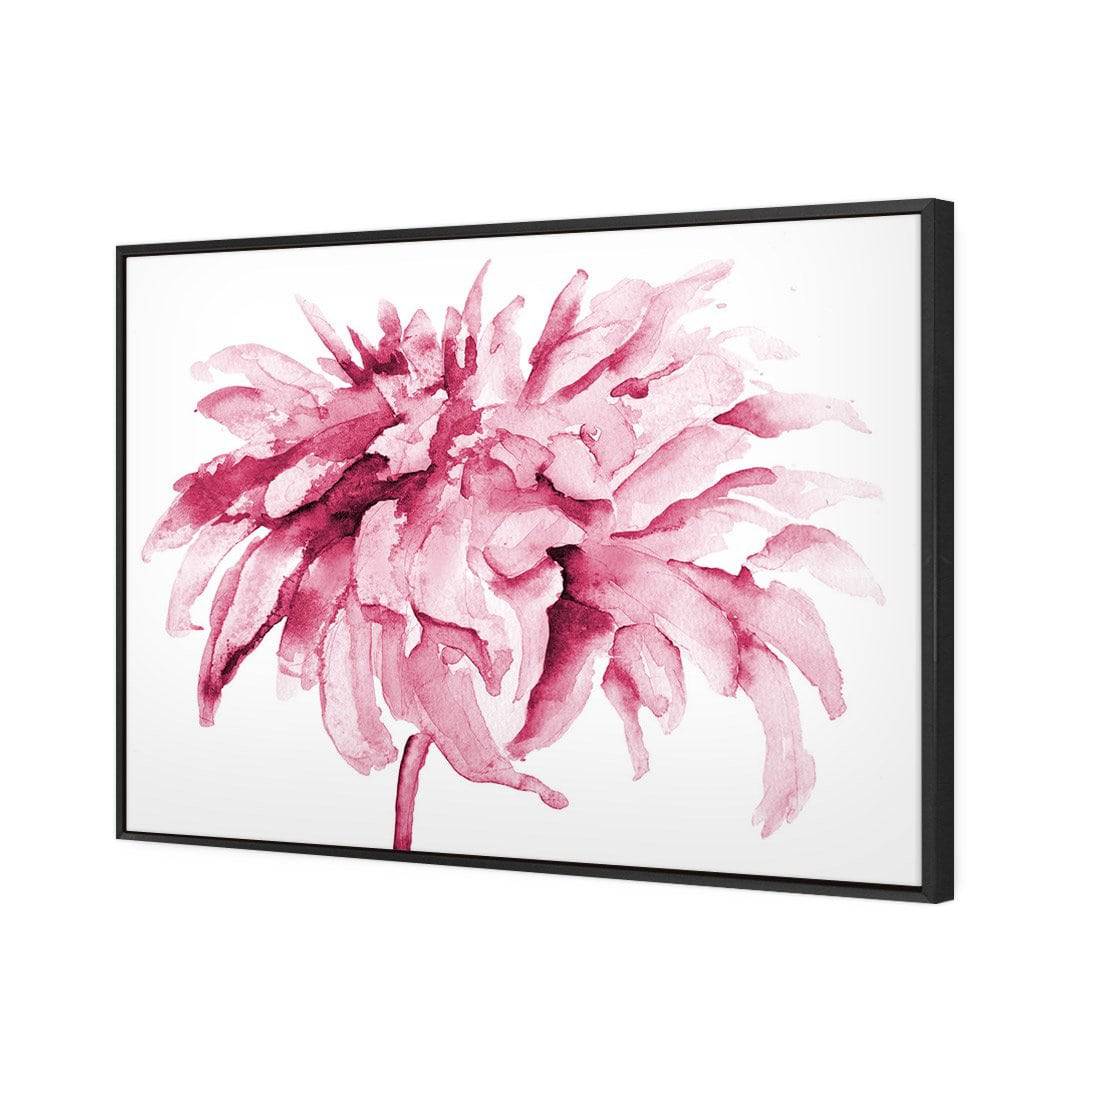 Fairy Floss, Pink Canvas Art-Canvas-Wall Art Designs-45x30cm-Rolled Canvas-Wall Art Designs